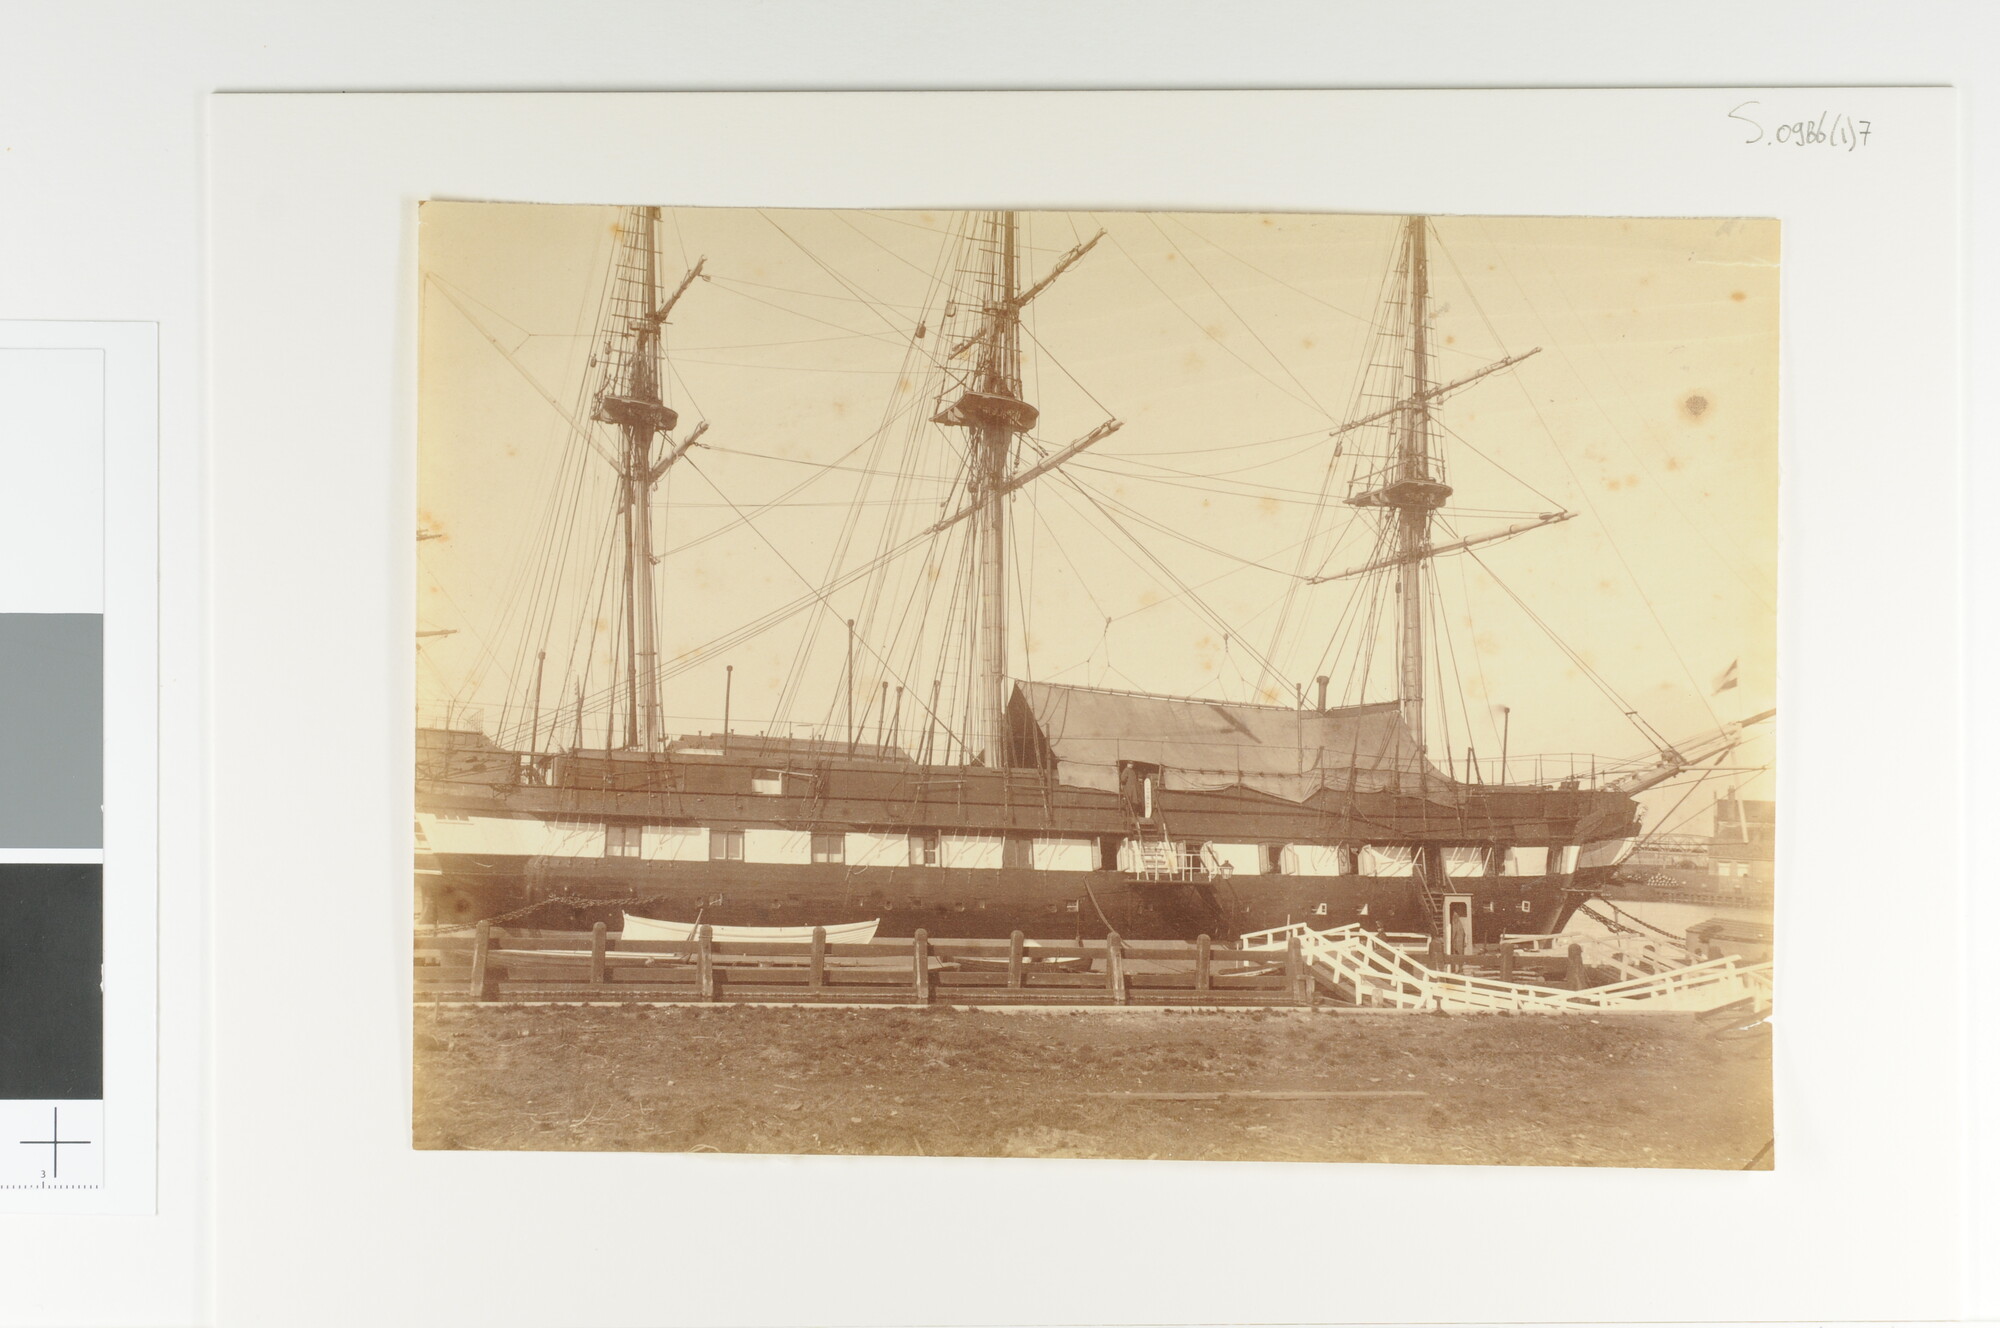 S.0986(01)7; Het wachtschip Zr.Ms. Prins Maurits der Nederlanden afgemeerd aan de kade van de Rijkswerf te Amsterdam; foto